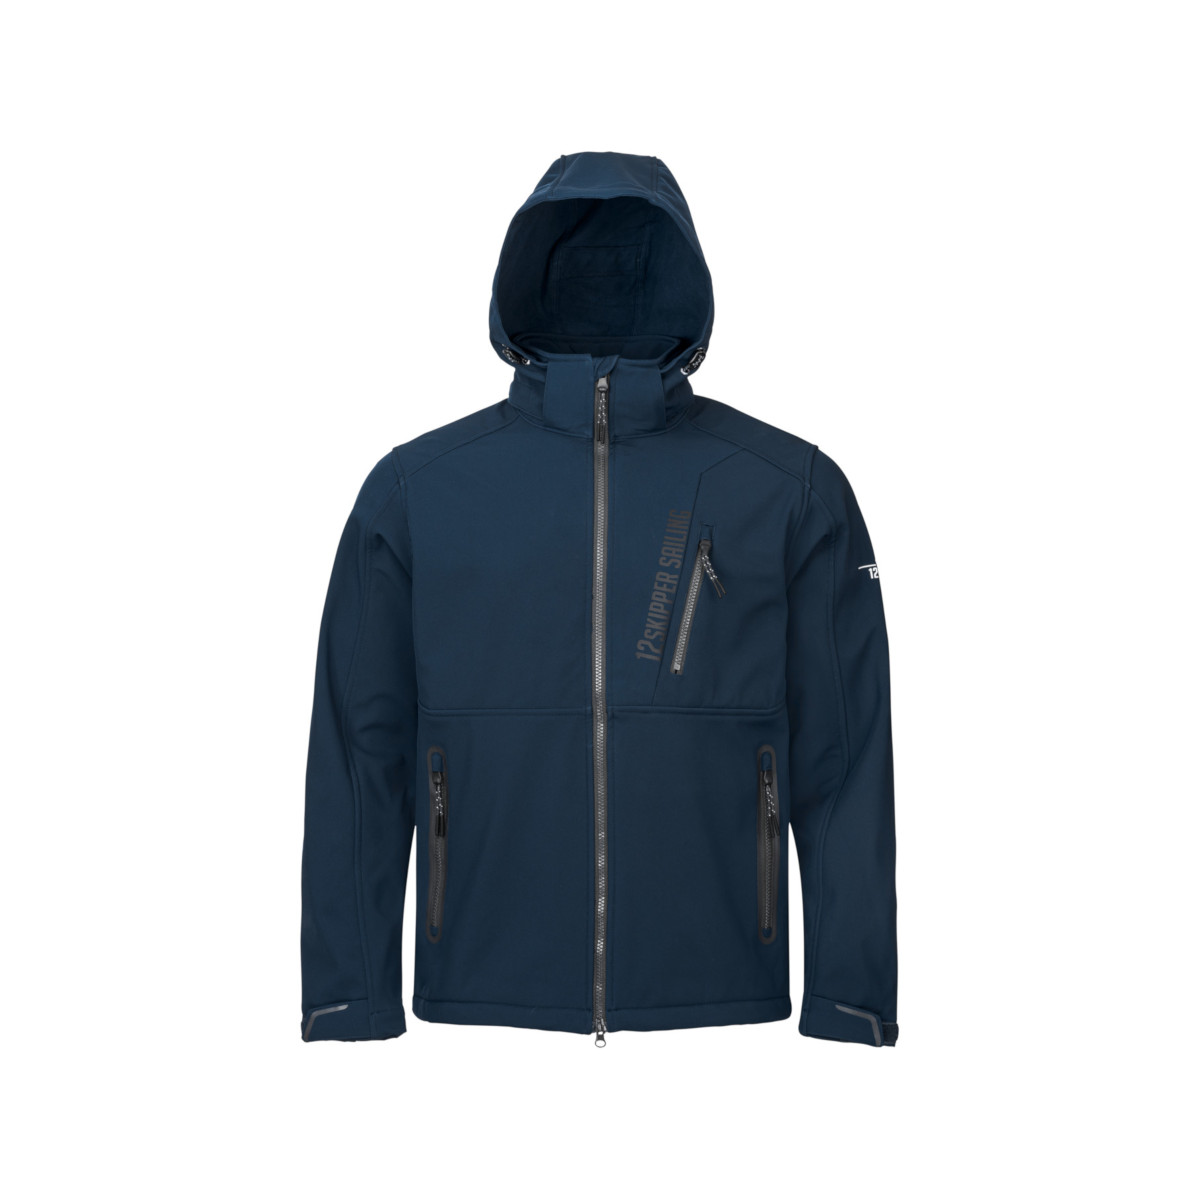 12skipper Amundsen Softshell giacca blu navy, taglia XXXL